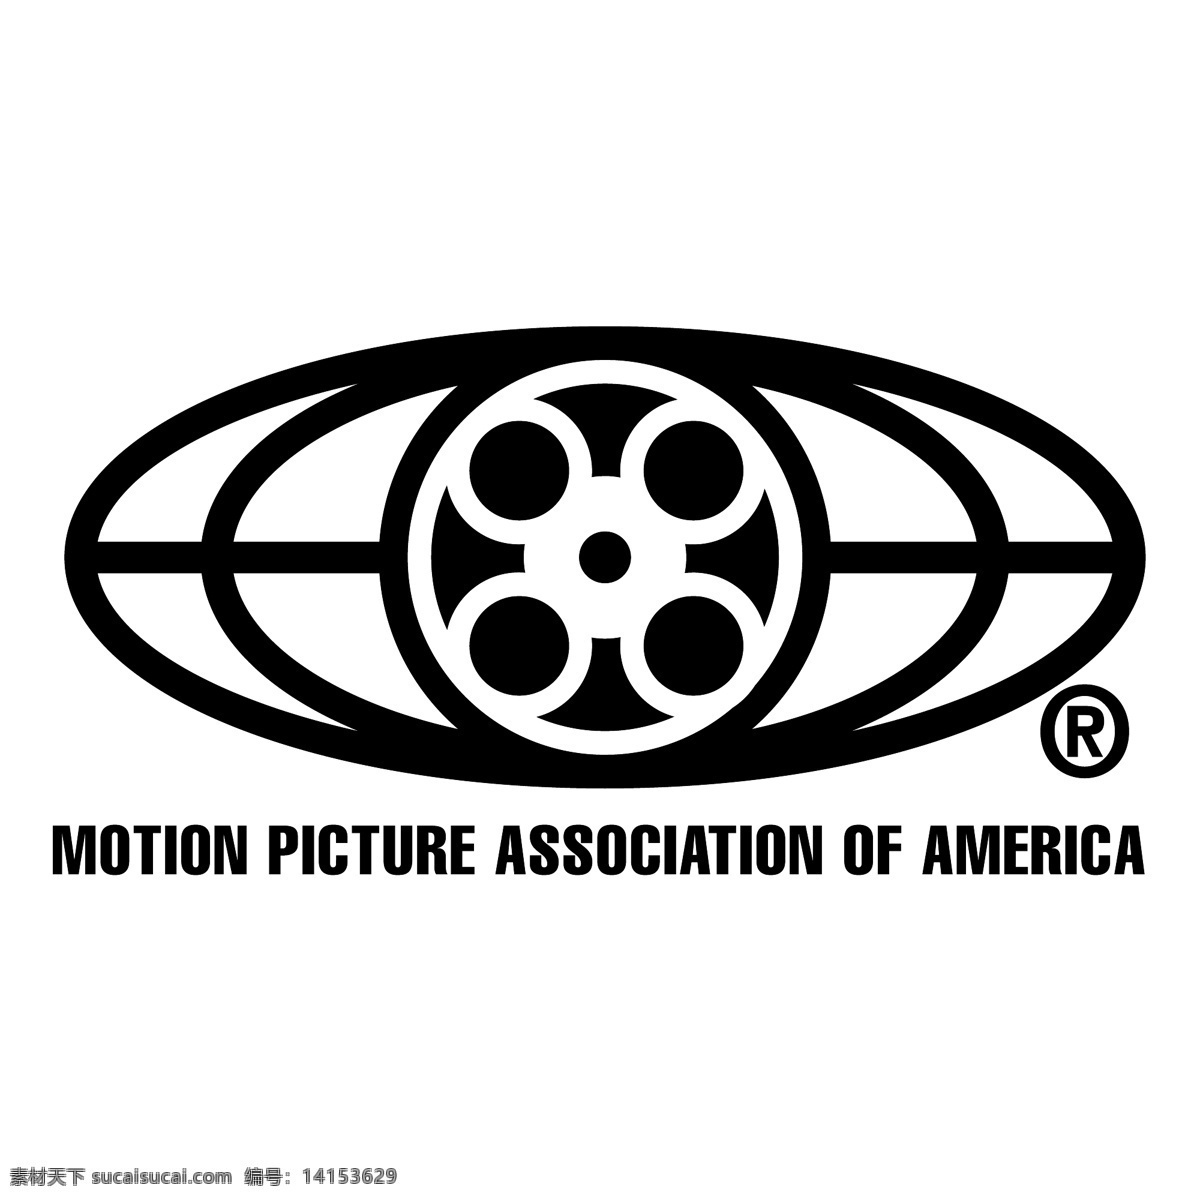 美国电影协会 标识 公司 免费 品牌 品牌标识 商标 矢量标志下载 免费矢量标识 矢量 psd源文件 logo设计